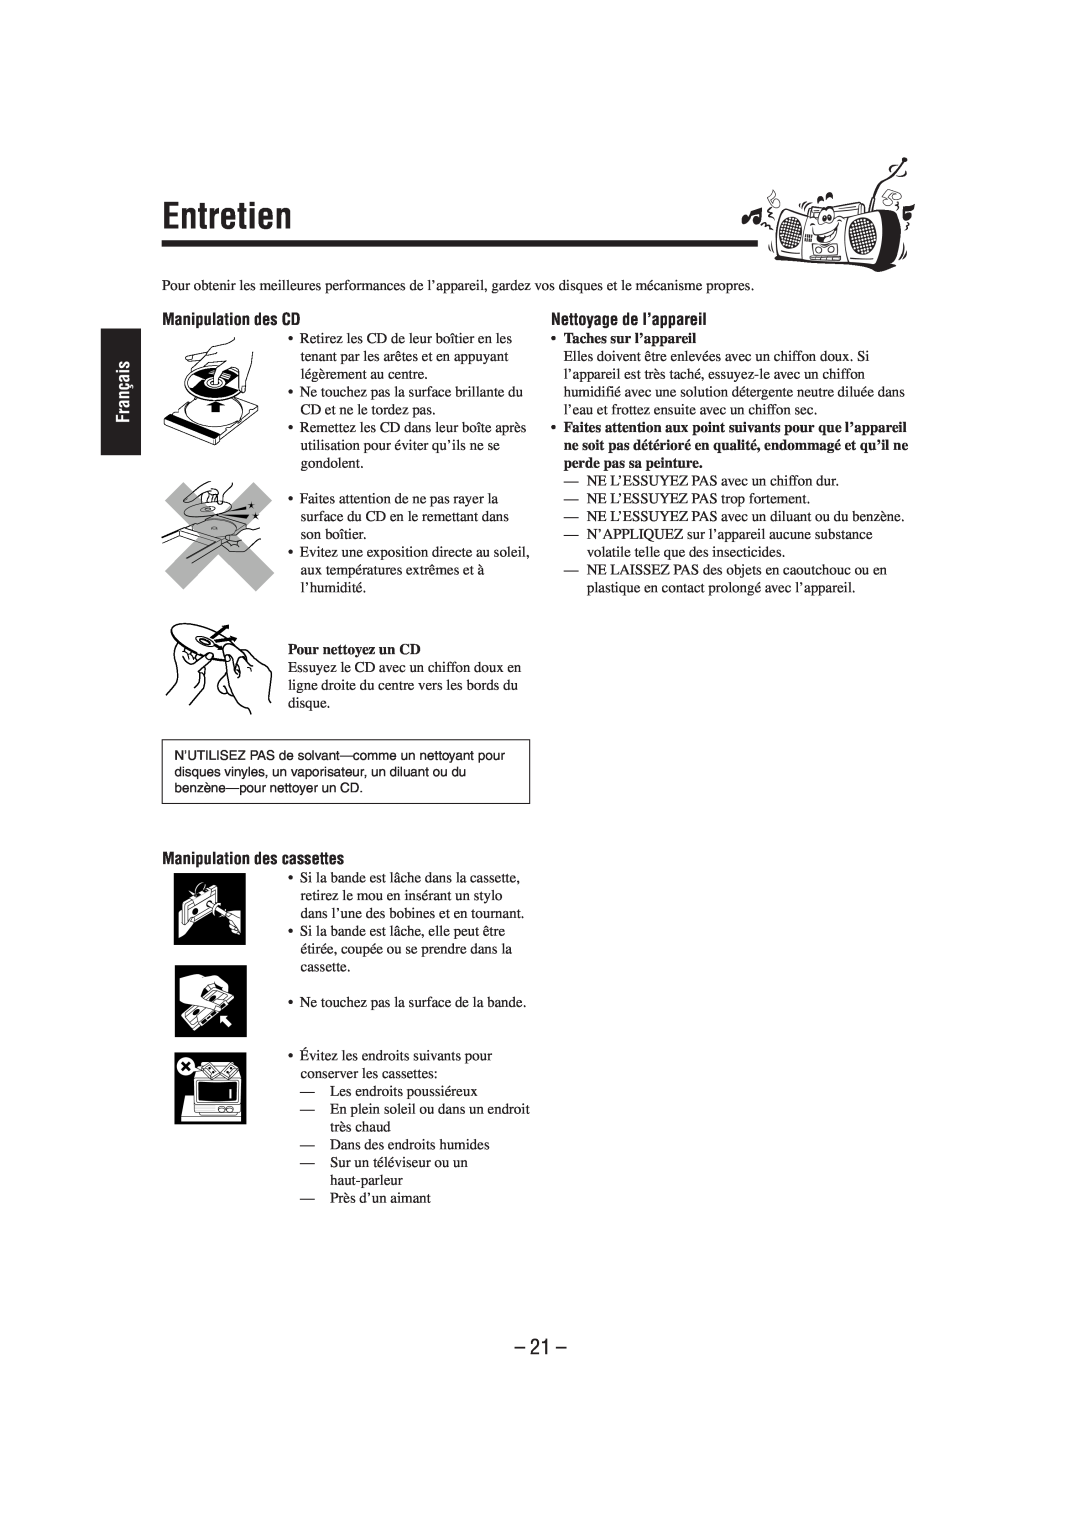 JVC FS-L30 manual Entretien, Français, Manipulation des CD, Nettoyage de l’appareil, Manipulation des cassettes 